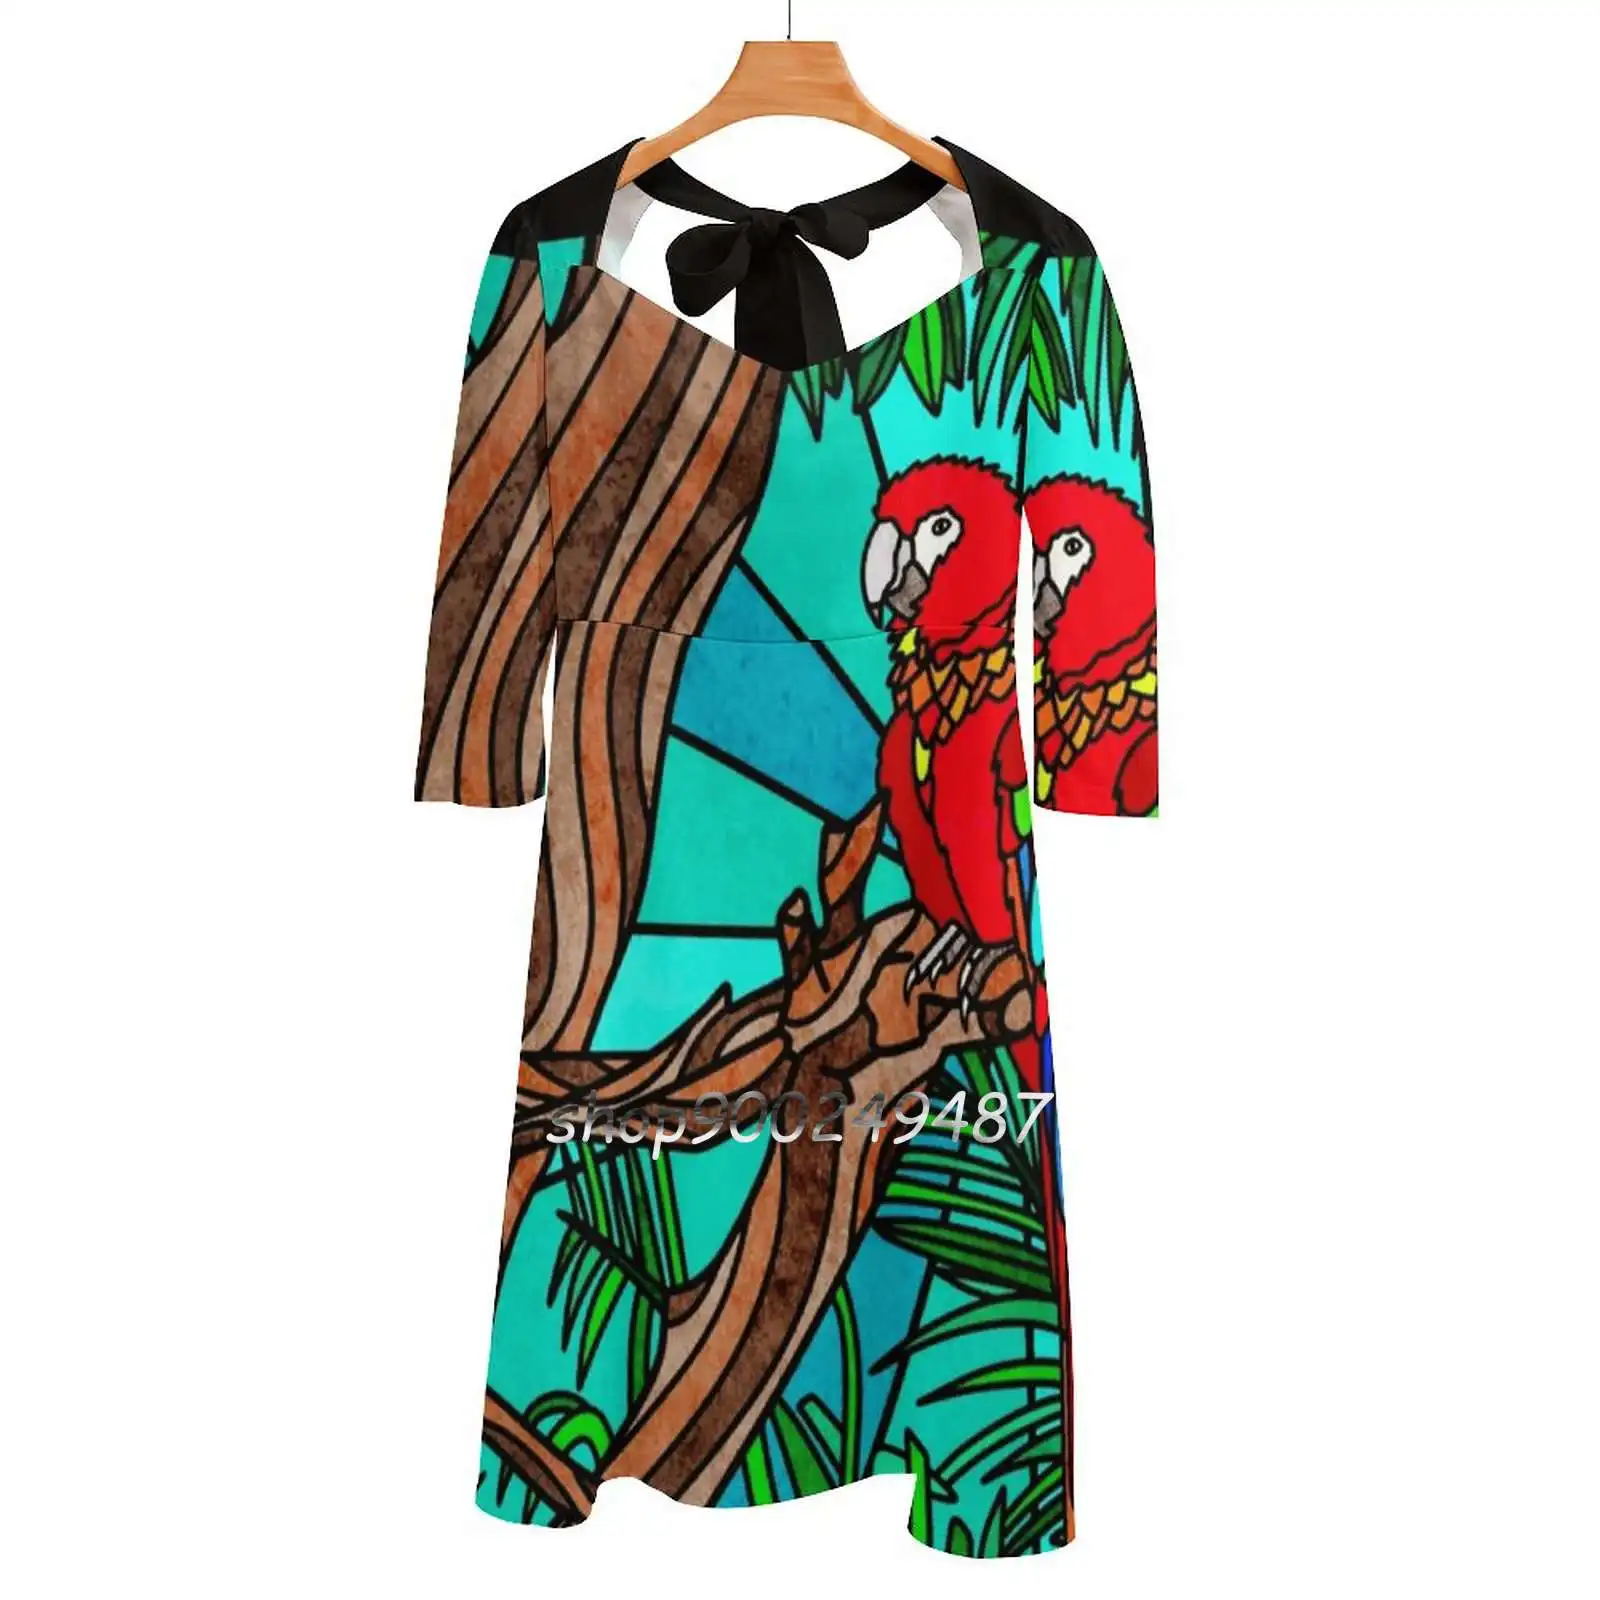 

Женское платье с квадратным вырезом, белое платье с принтом попугаев, тропических лесов, дождя, гор, диких птиц